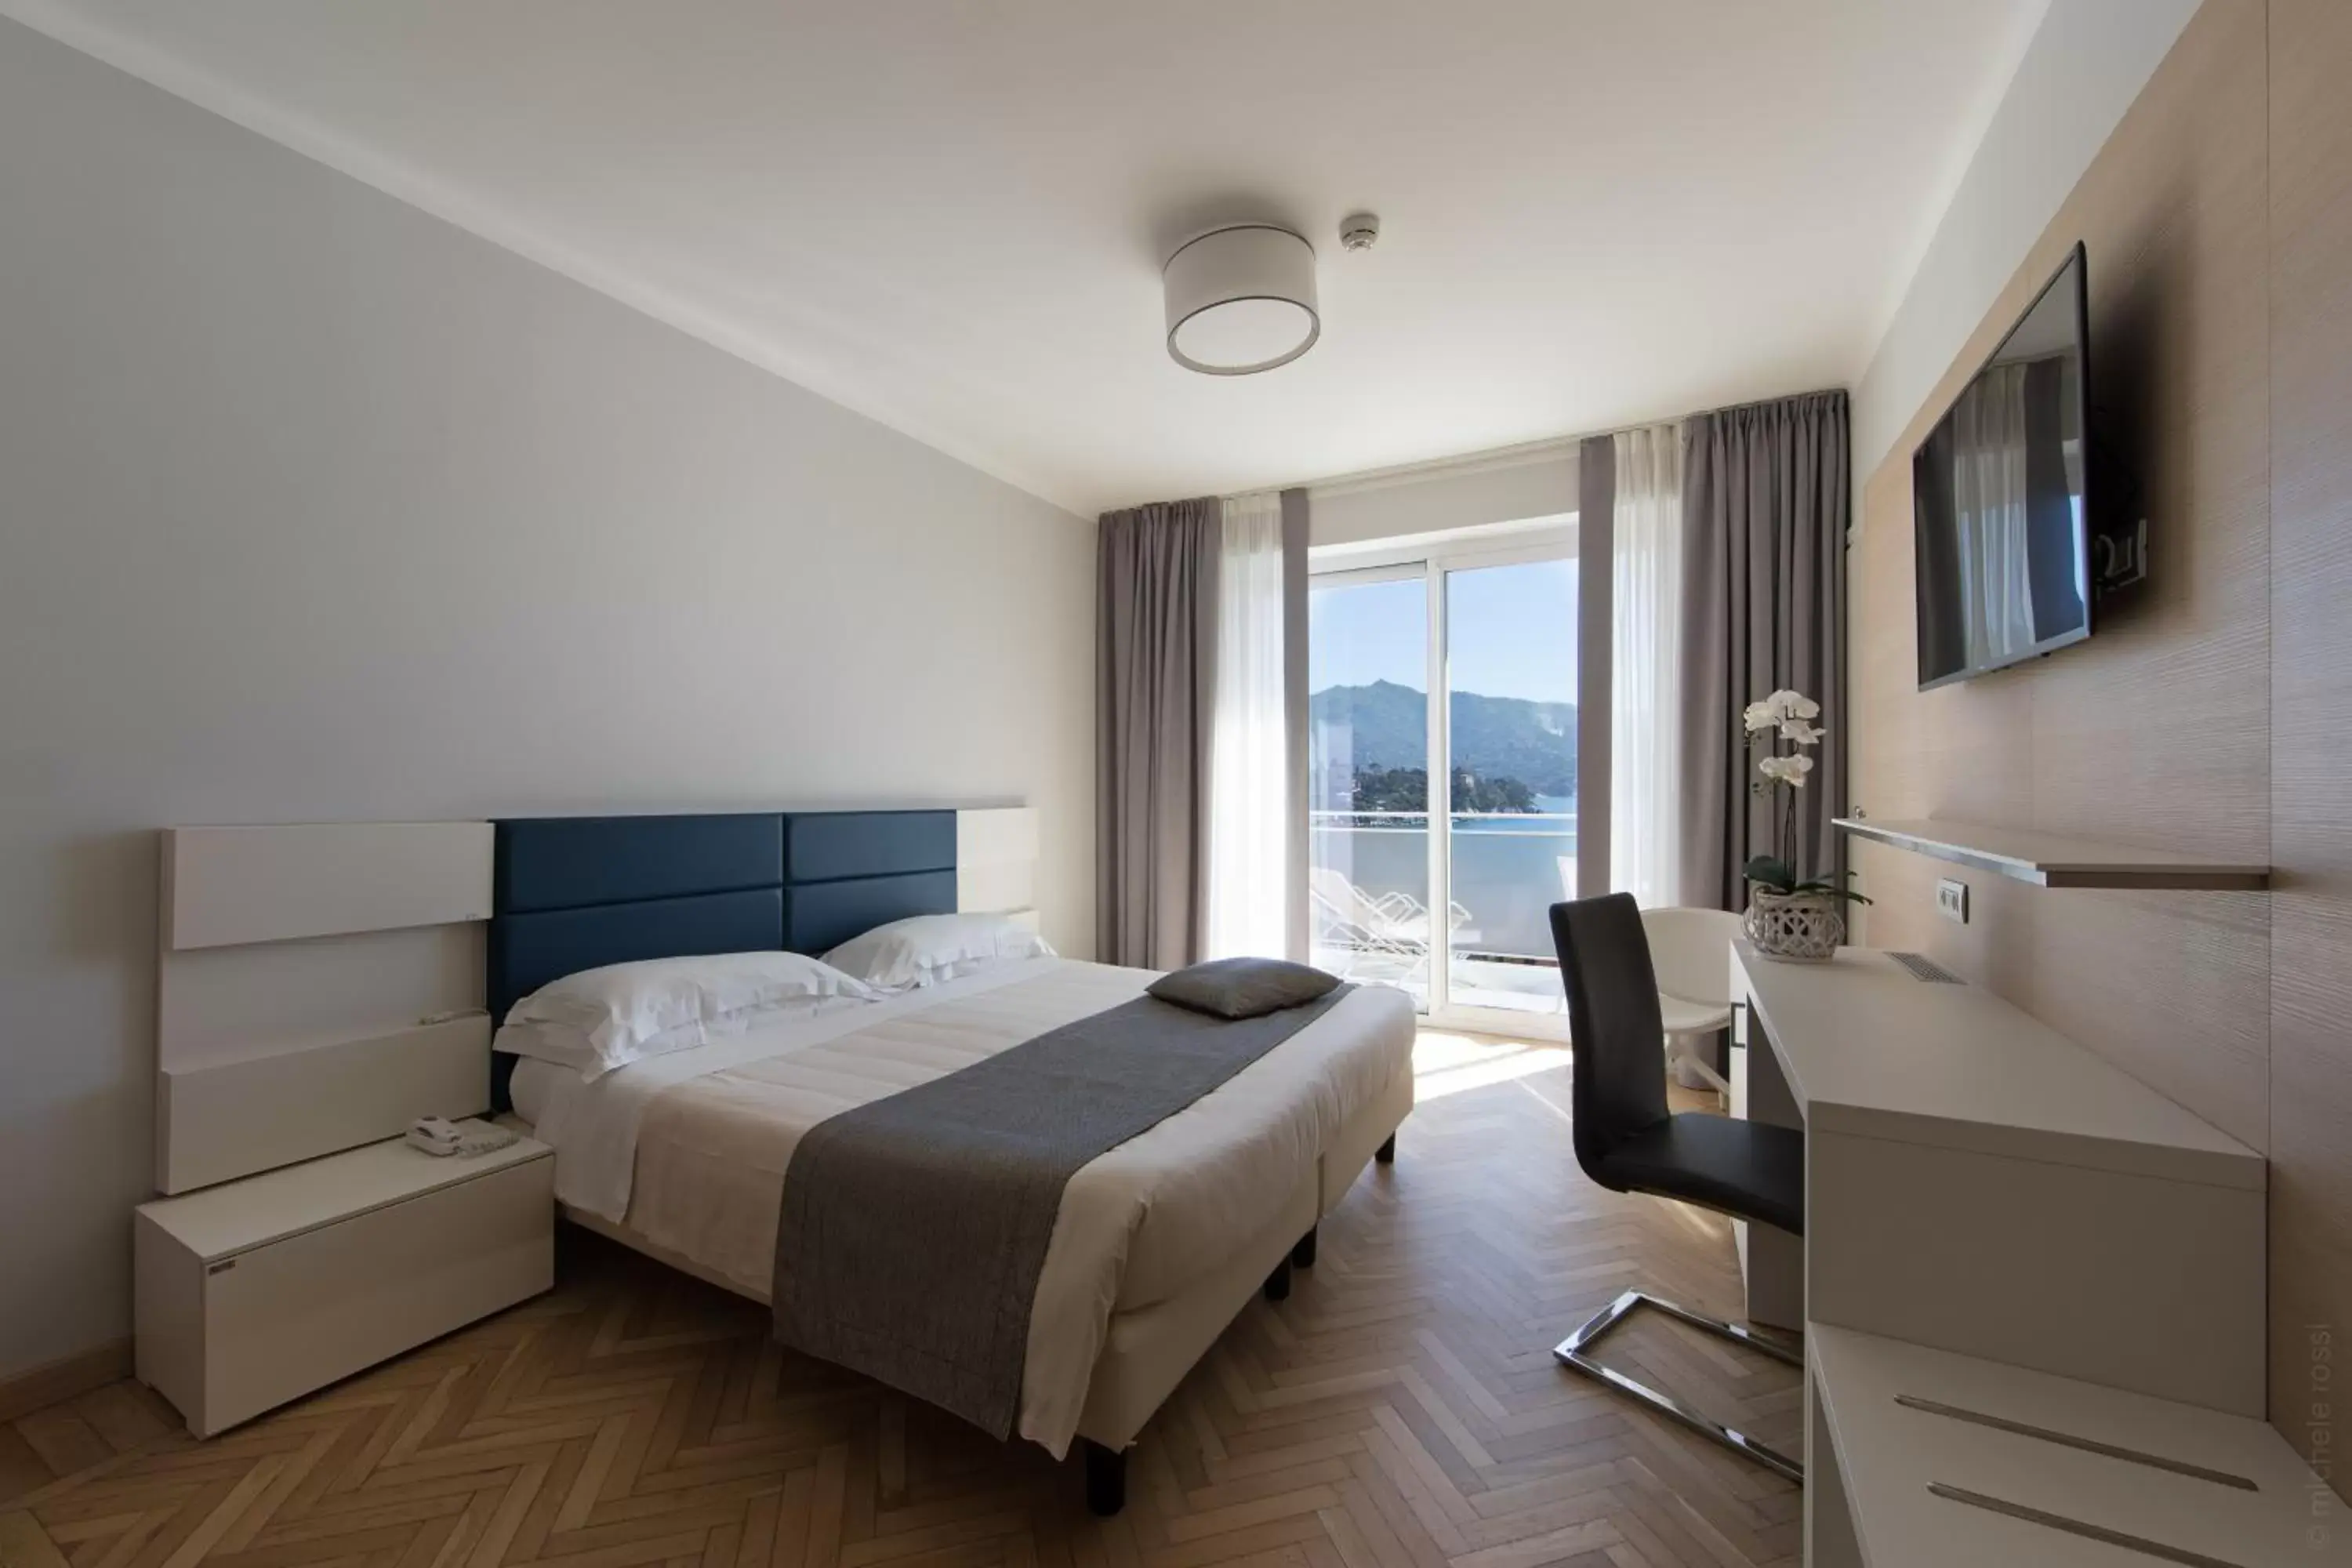 Bedroom in B&B Hotels Park Hotel Suisse Santa Margherita Ligure